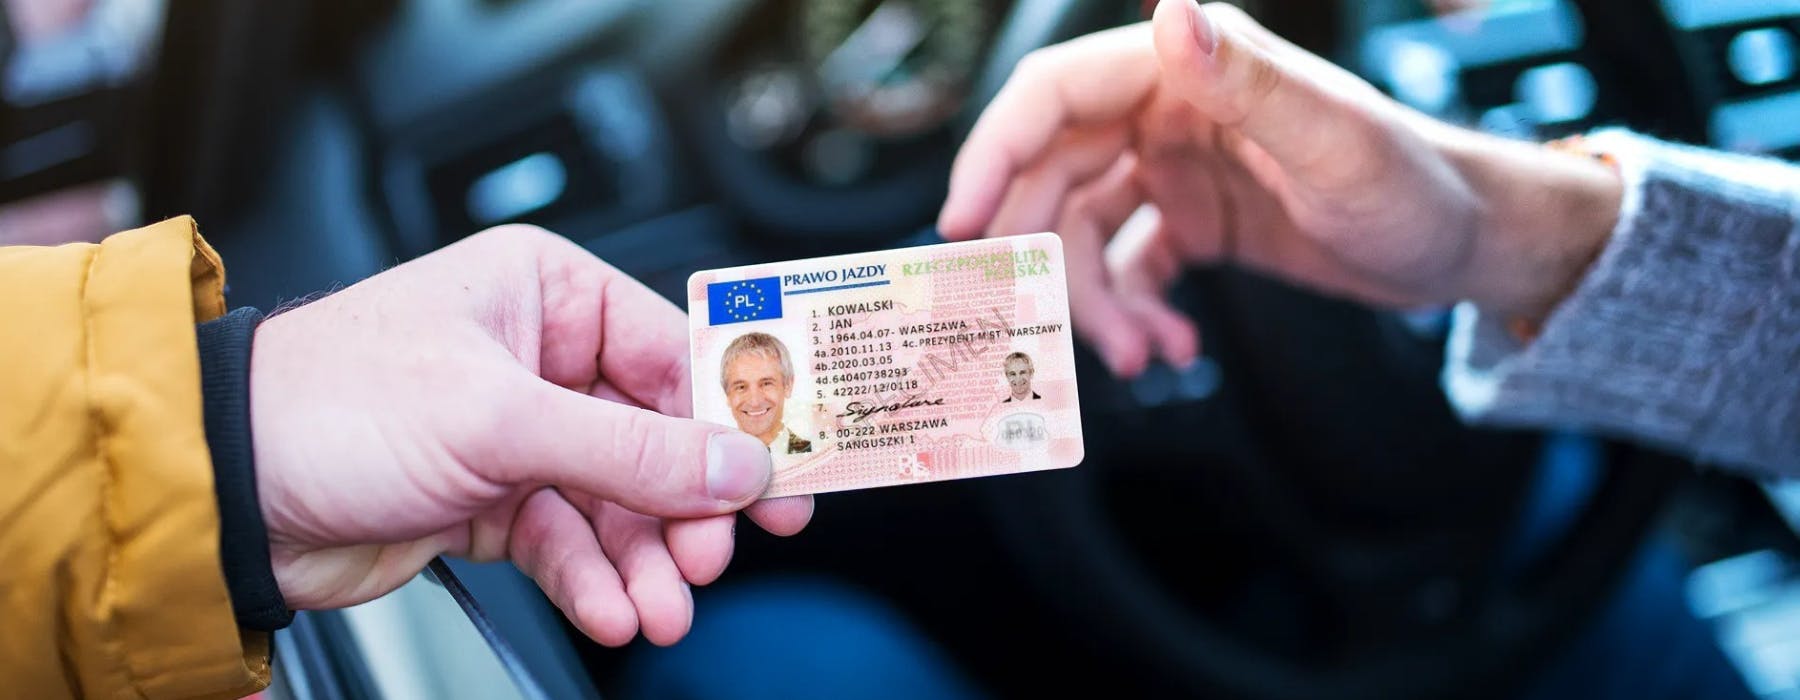 Polskie prawo jazdy w Niemczech & wymiana prawa jazdy na